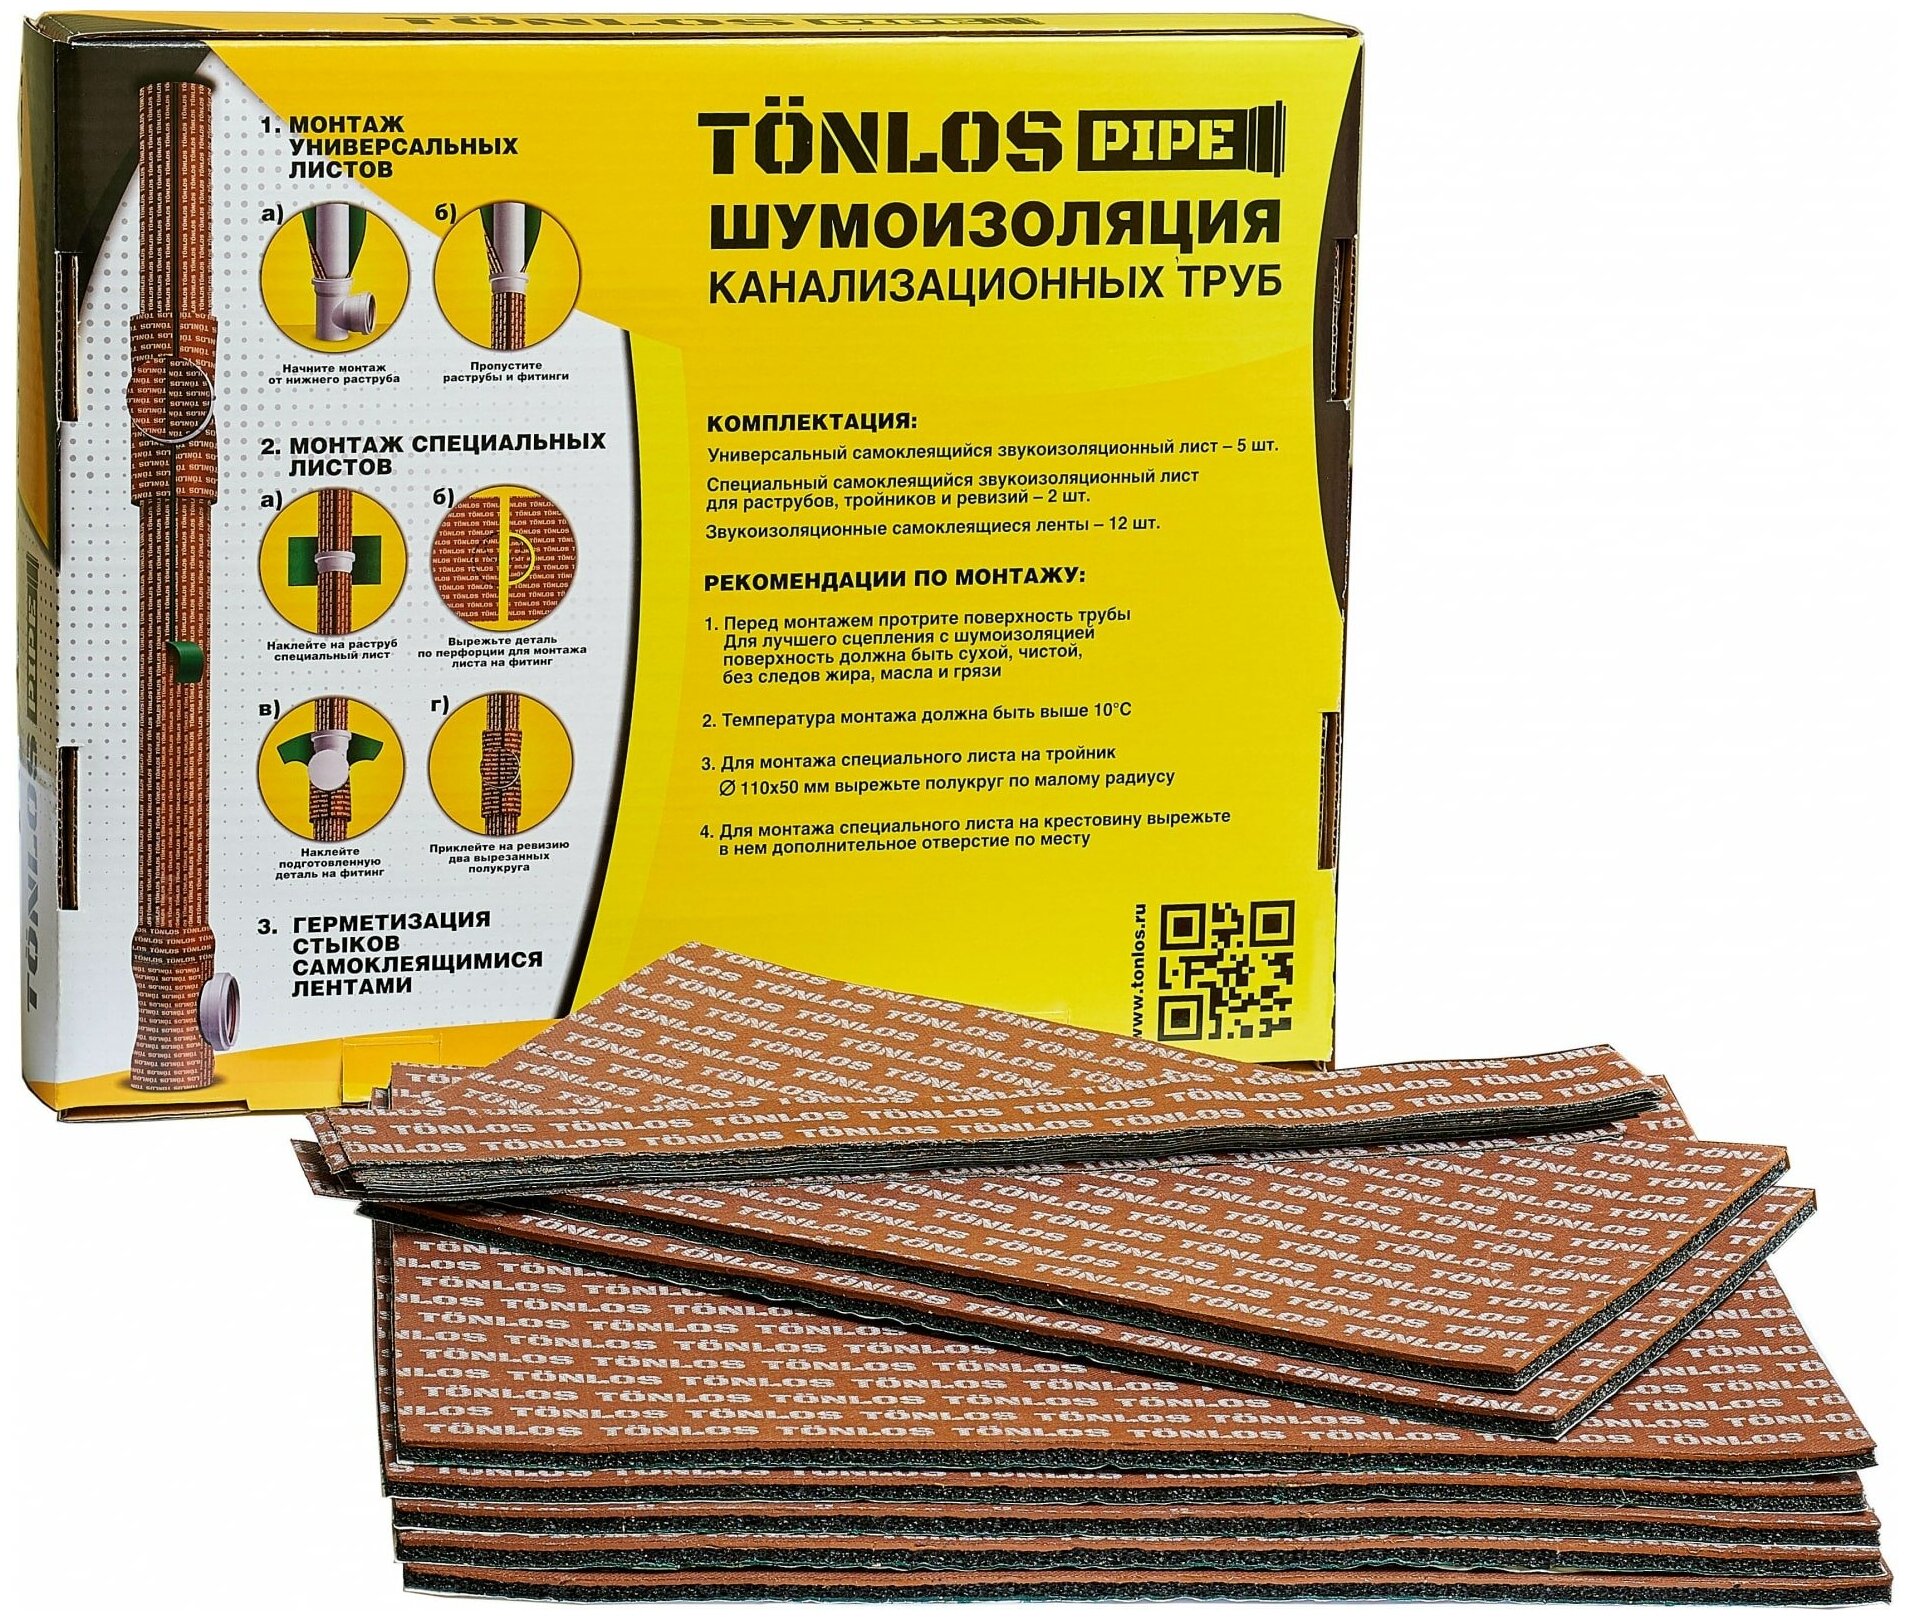 Комплект для шумоизоляции канализационных труб I TONLOS PIPE